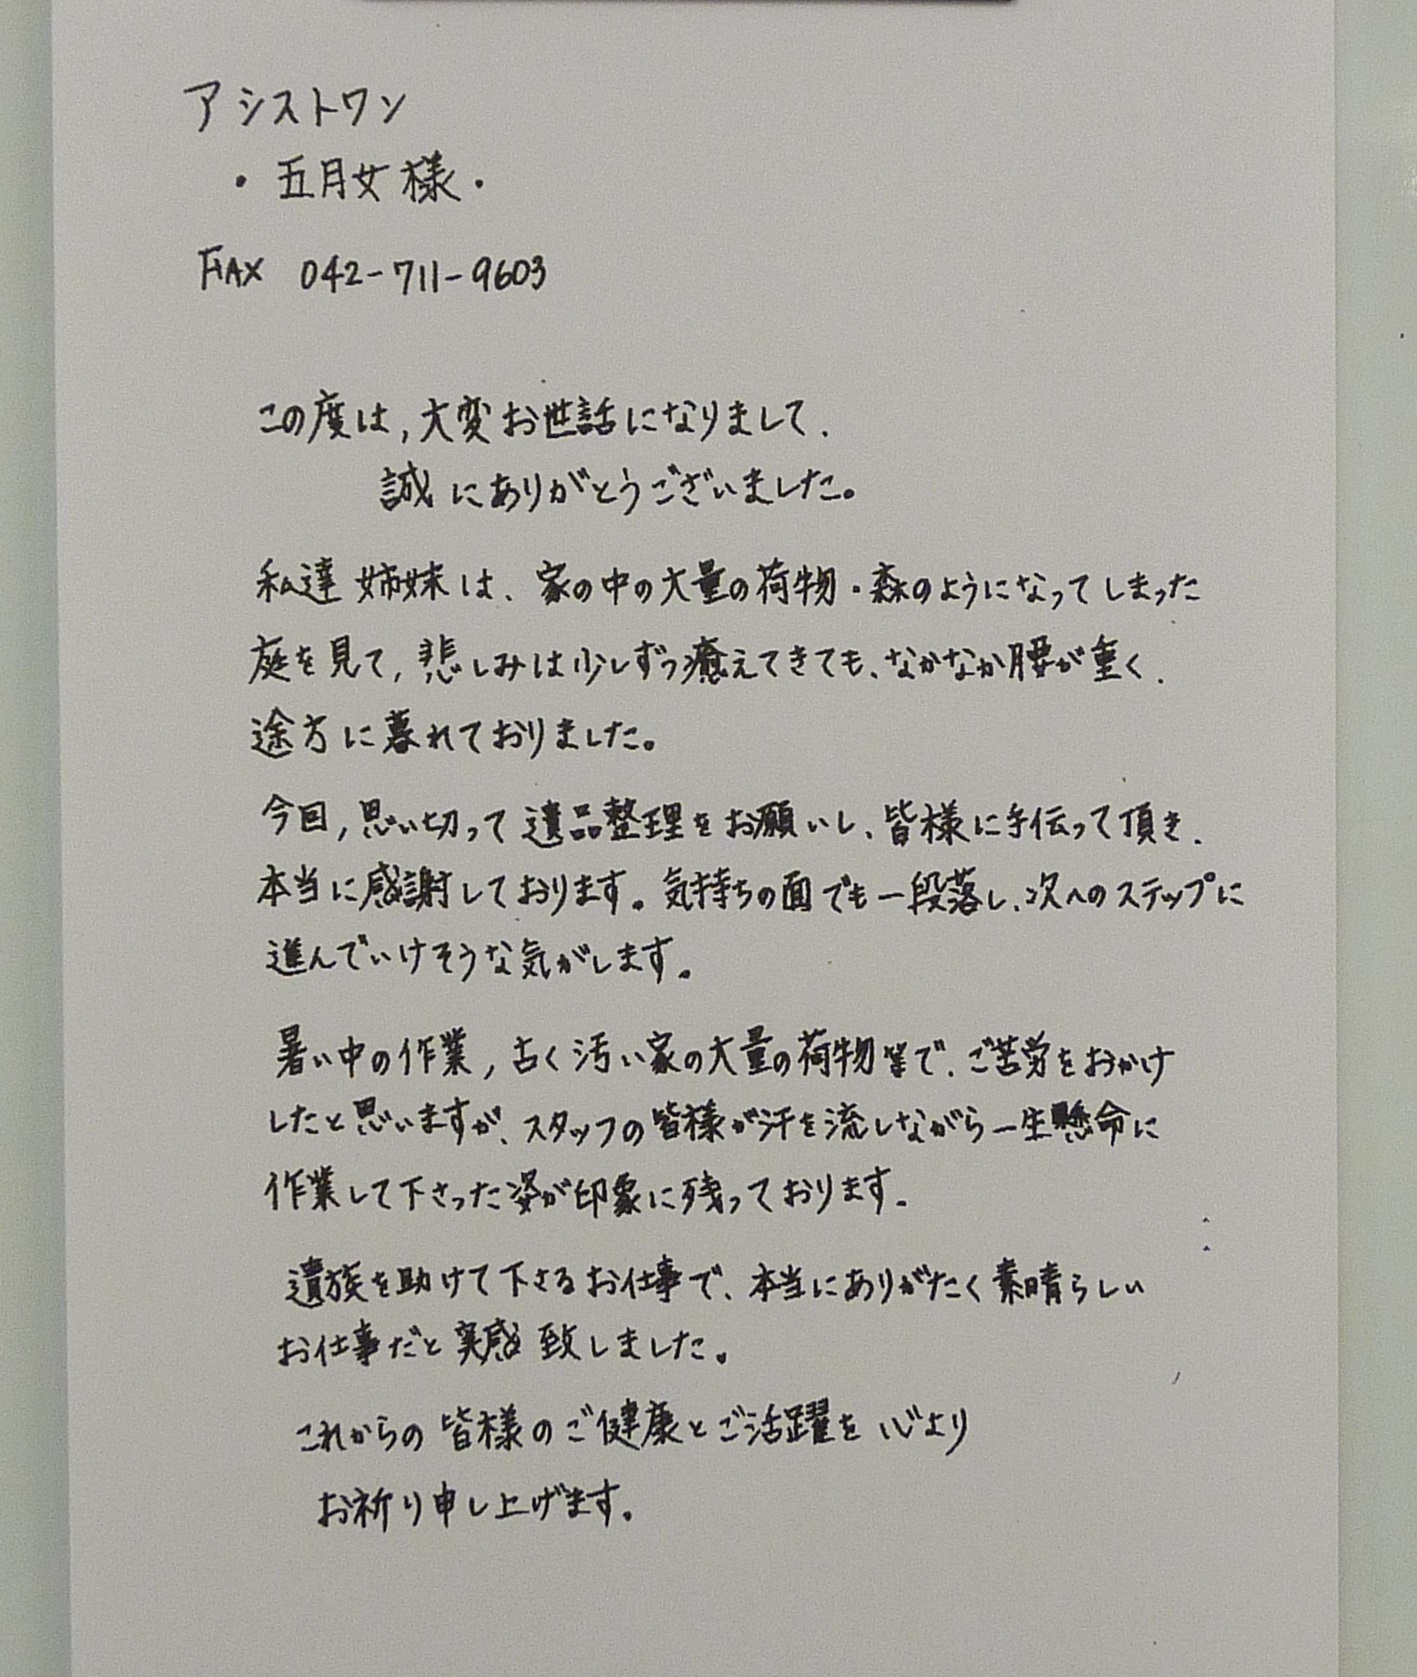 【NEWS&キャンペーン情報】お客様から感謝のお手紙をいただきました。 神奈川県相模原市 上溝の不用品回収、遺品